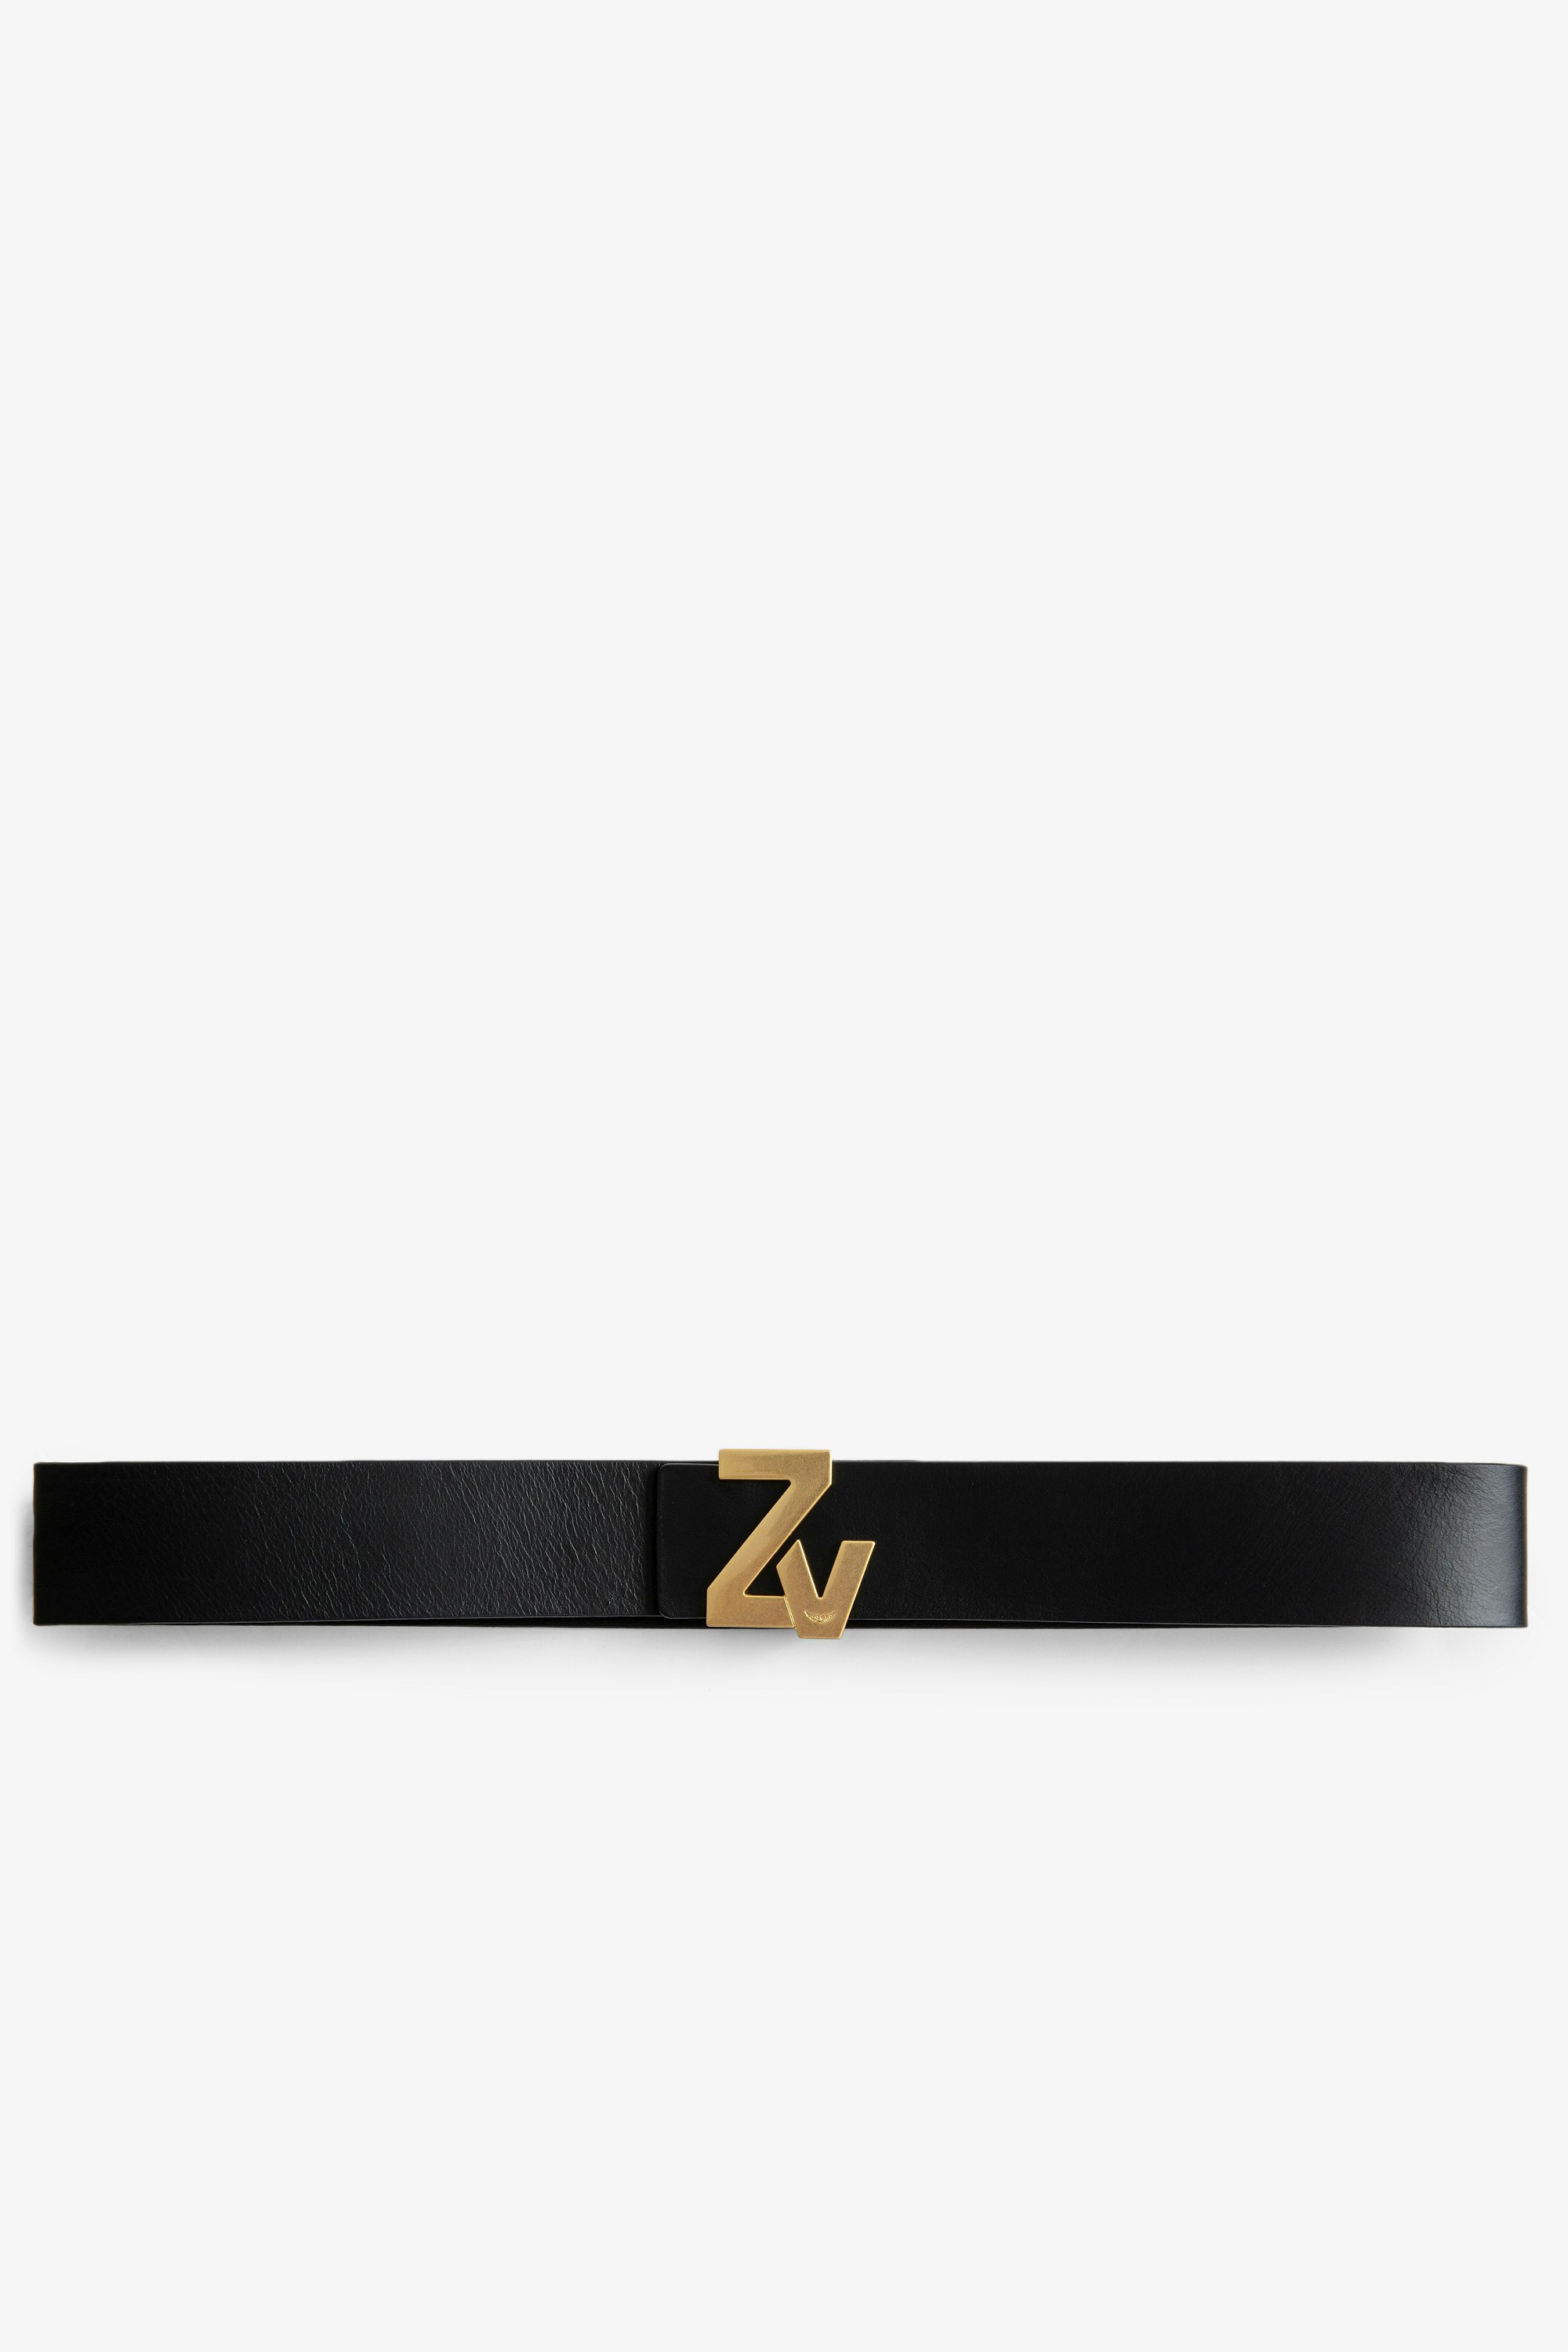 La Belt ZV Initiale Belt Women’s ZV Initiale black leather belt